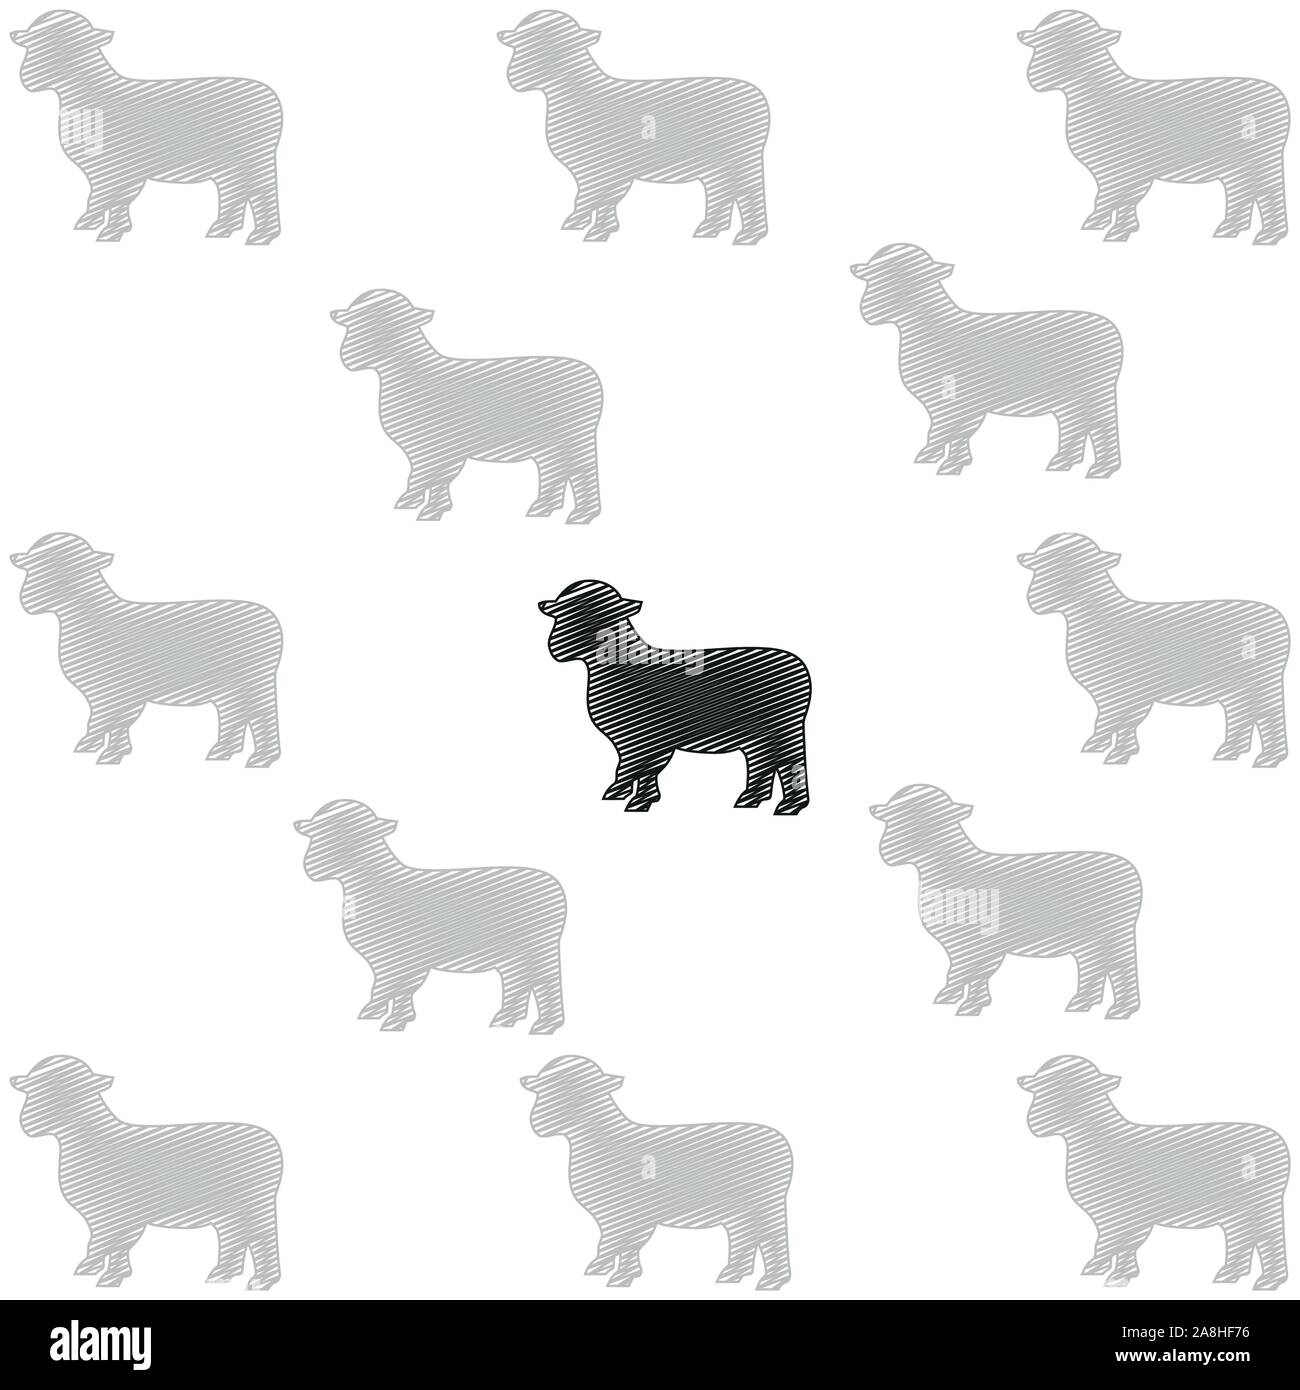 Sheep, animal, herd, herd of sheep, background Stock Vector